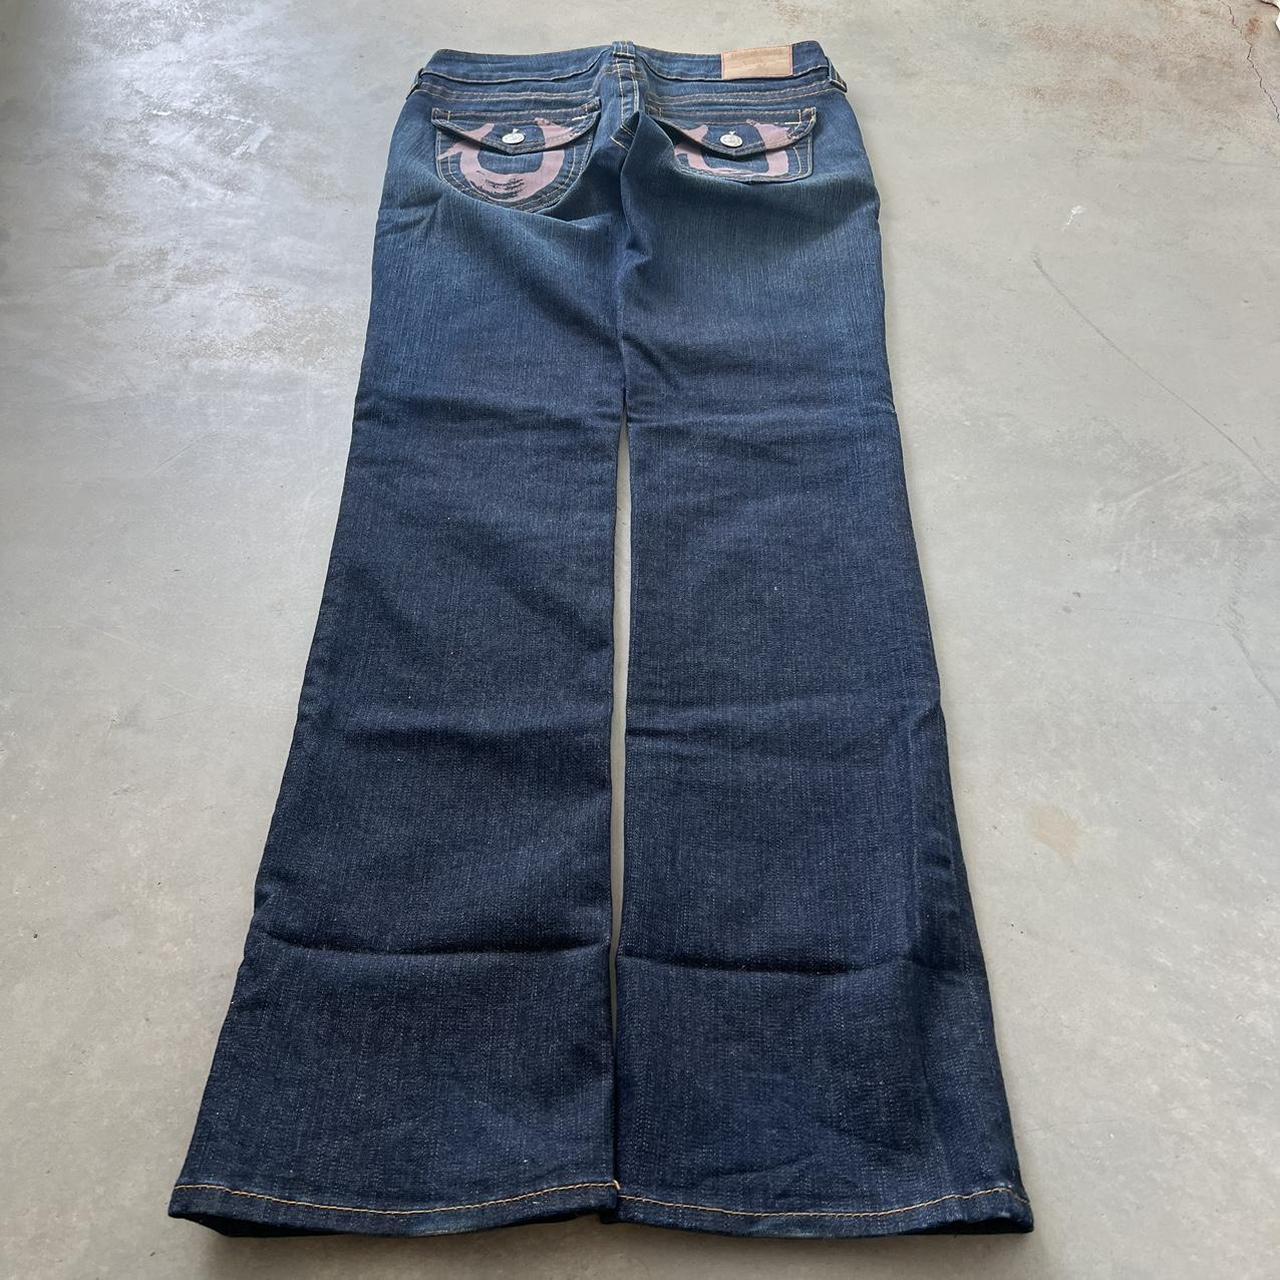 Vintage Women’s Grunge Jeans Made in U.S.A. True... - Depop